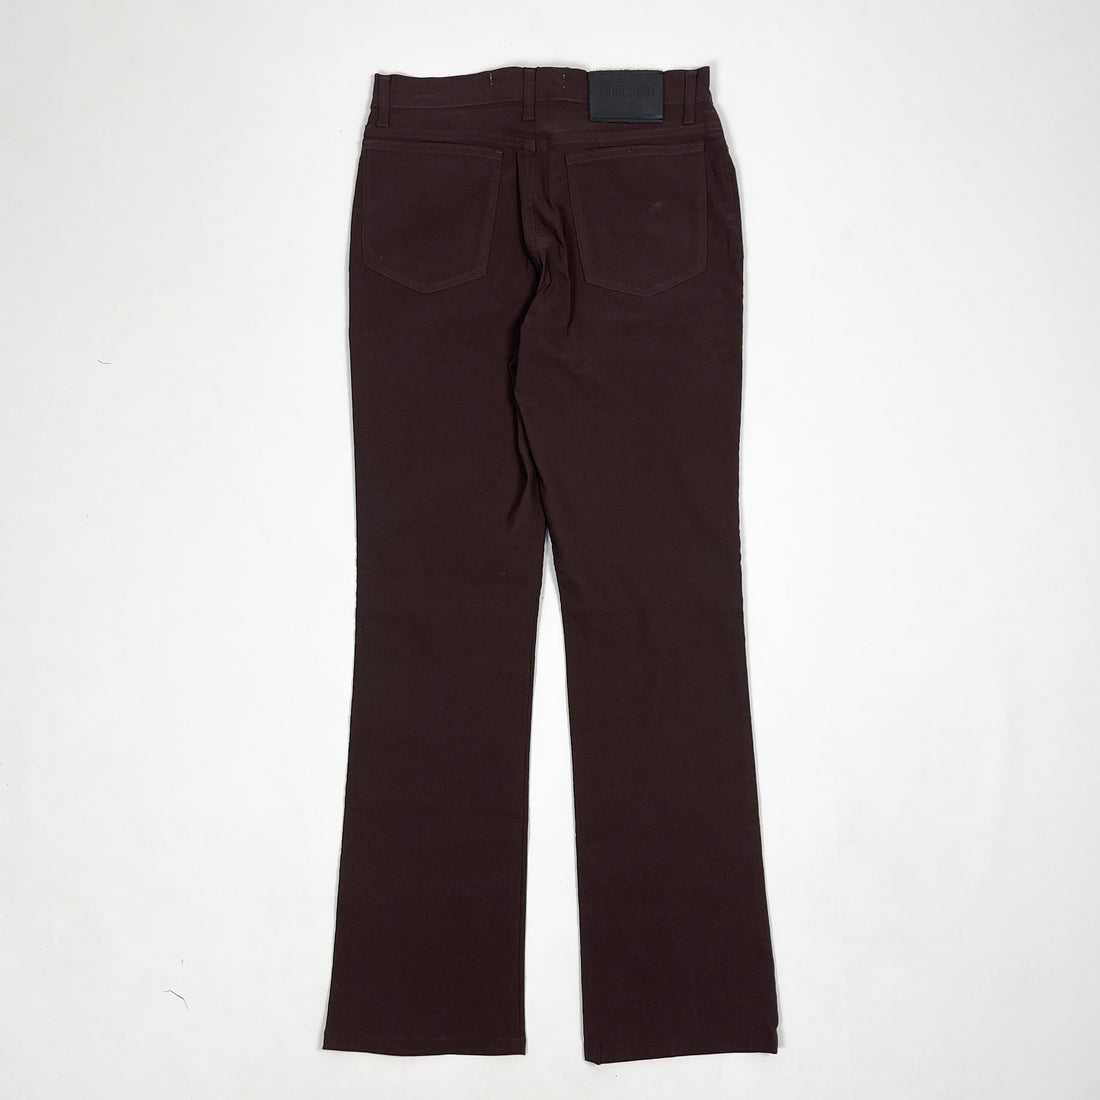 Moschino Dark Brown Pants 2000's